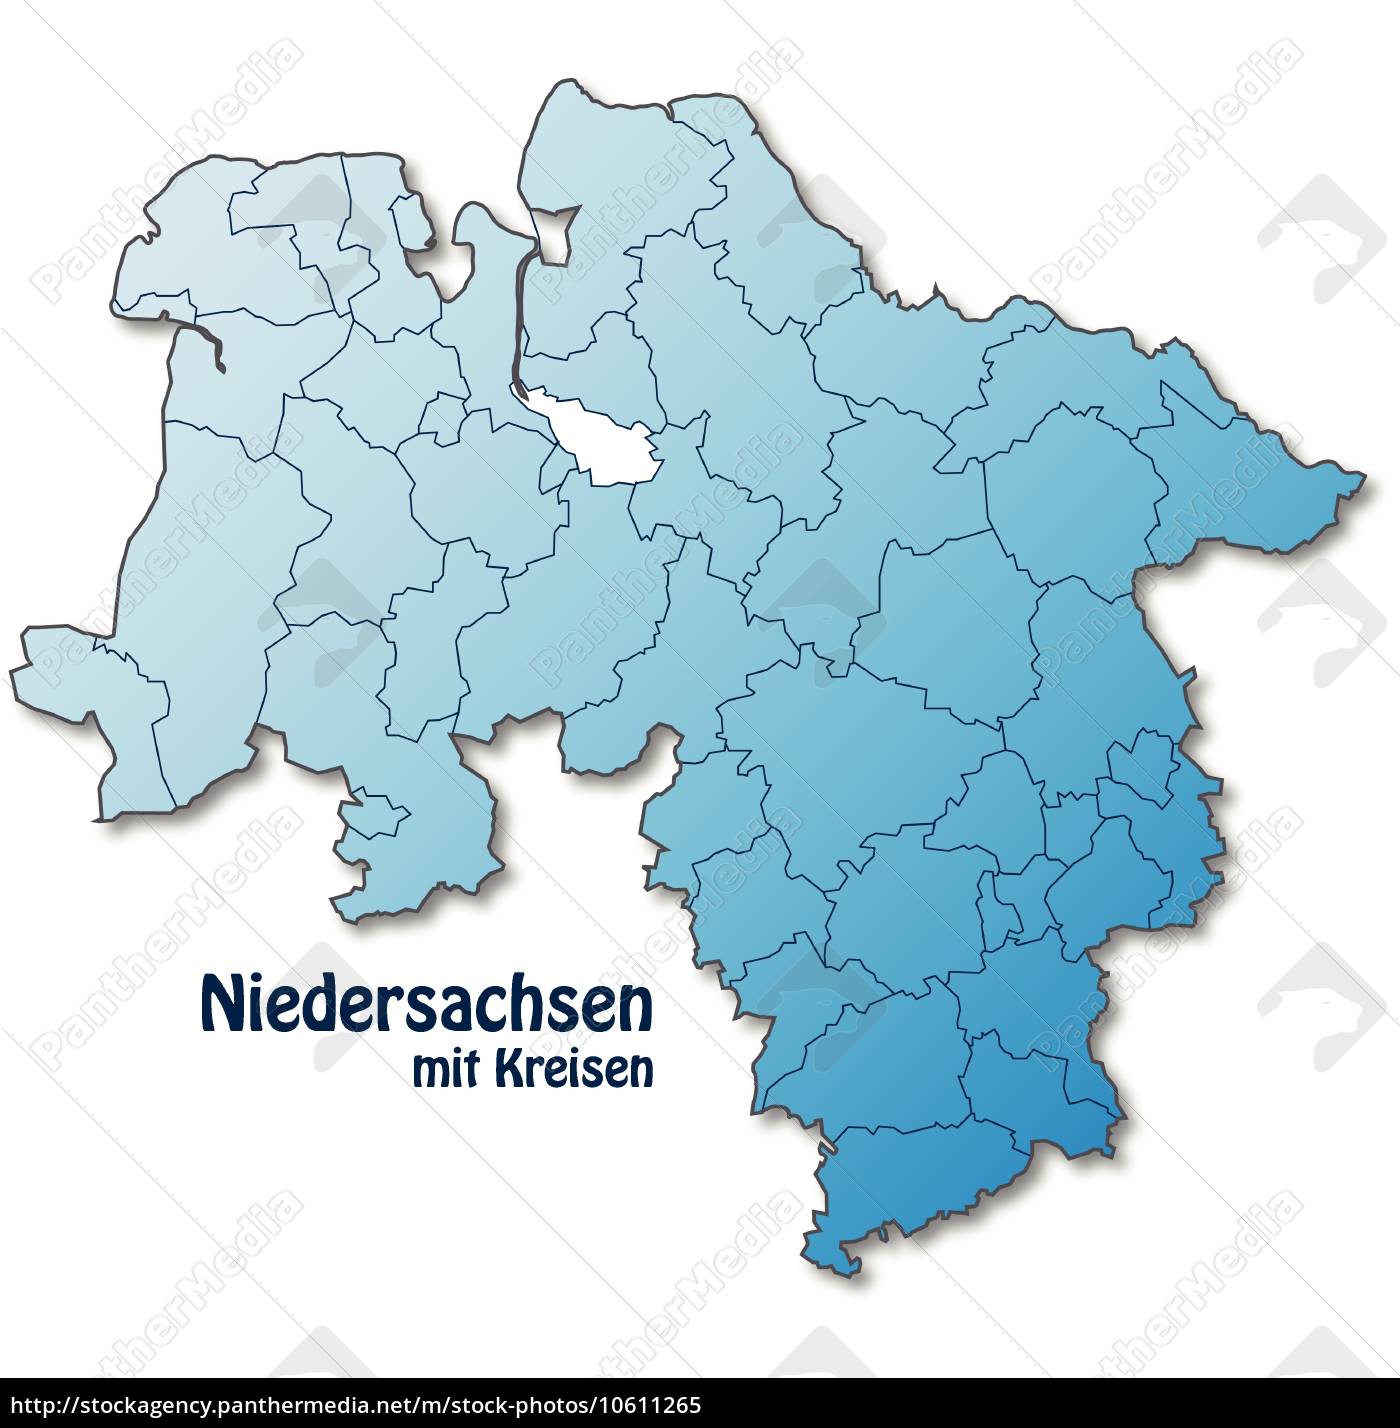 Karte von Niedersachsen mit Grenzen in Blau - Lizenzfreies Bild